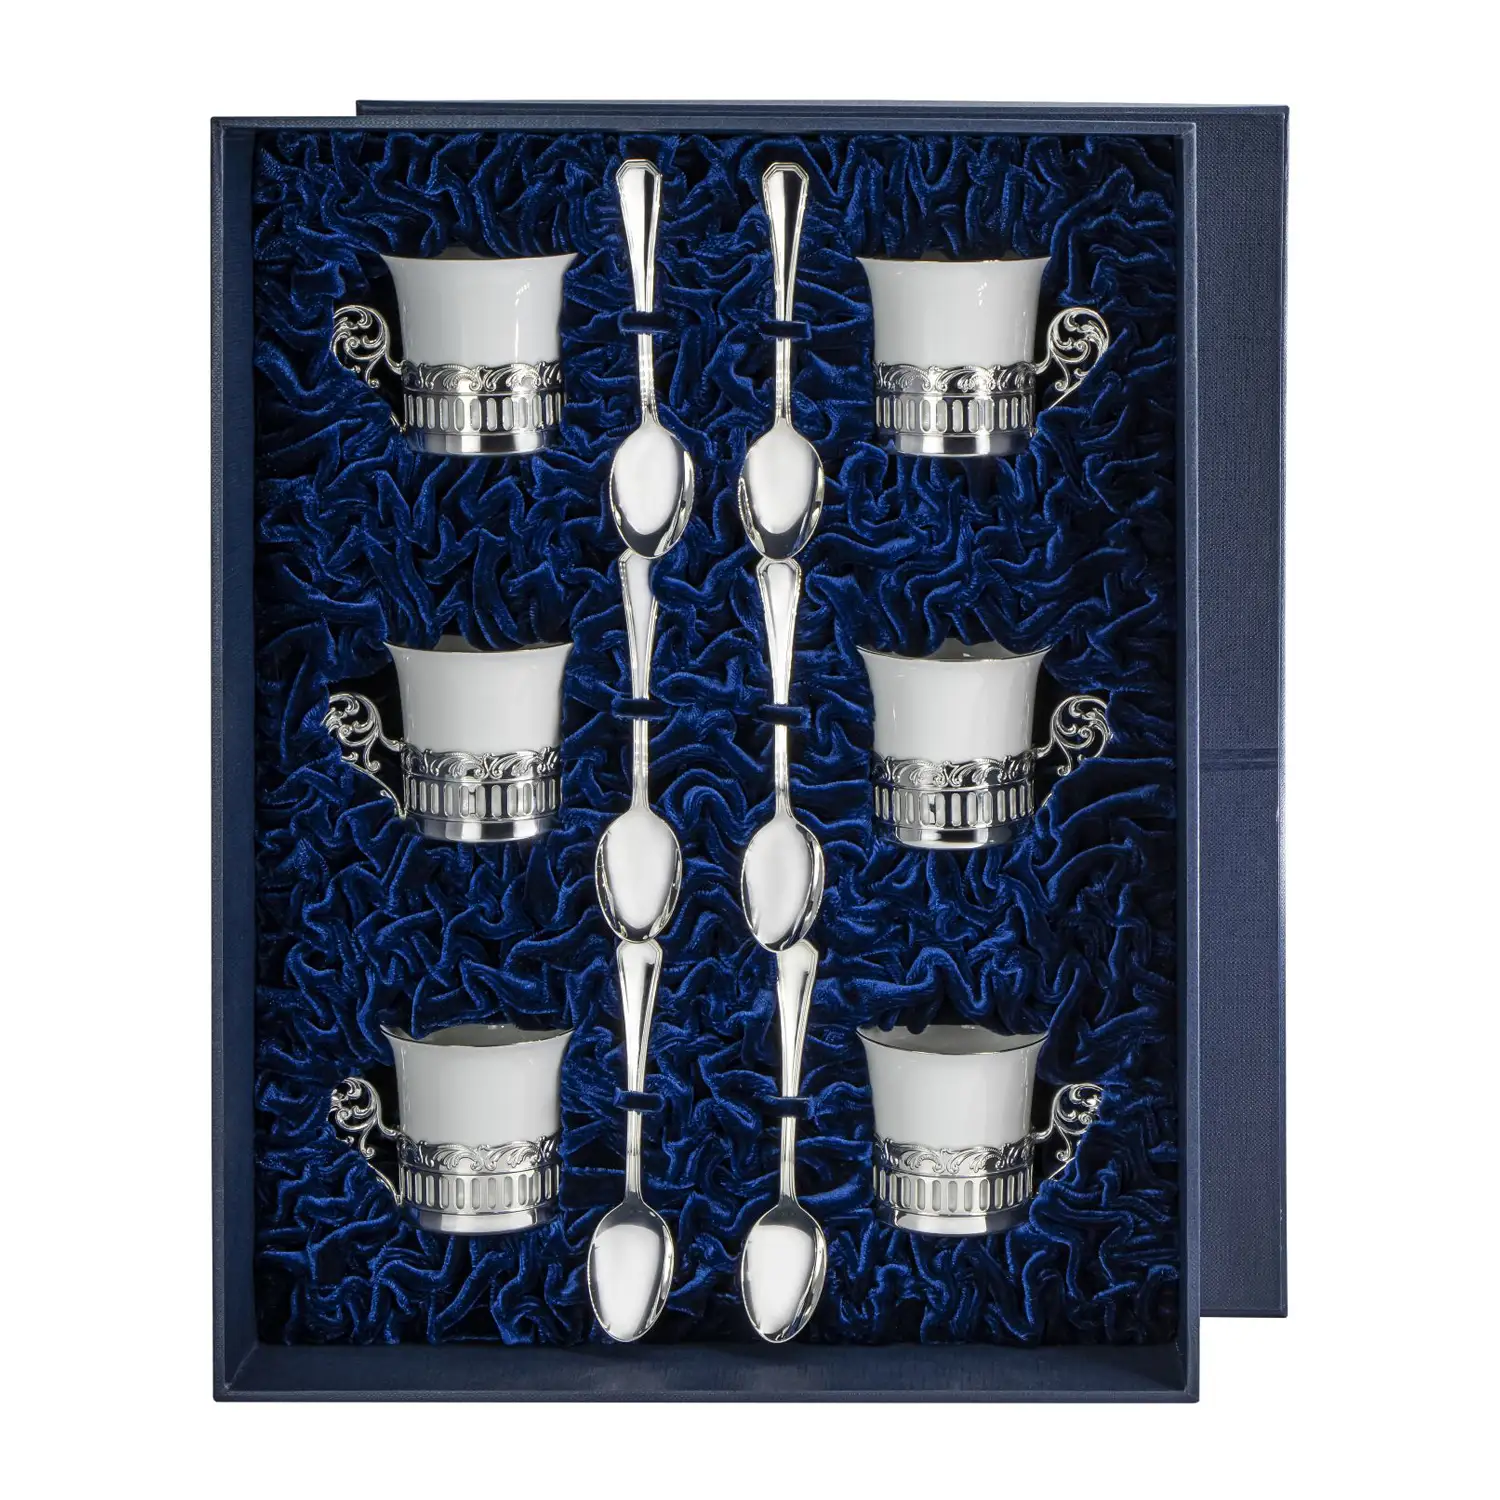 Набор кофейных чашек Богема: ложка, чашка на 6 персон (Серебро 925) набор серебряных кофейных чашек богема